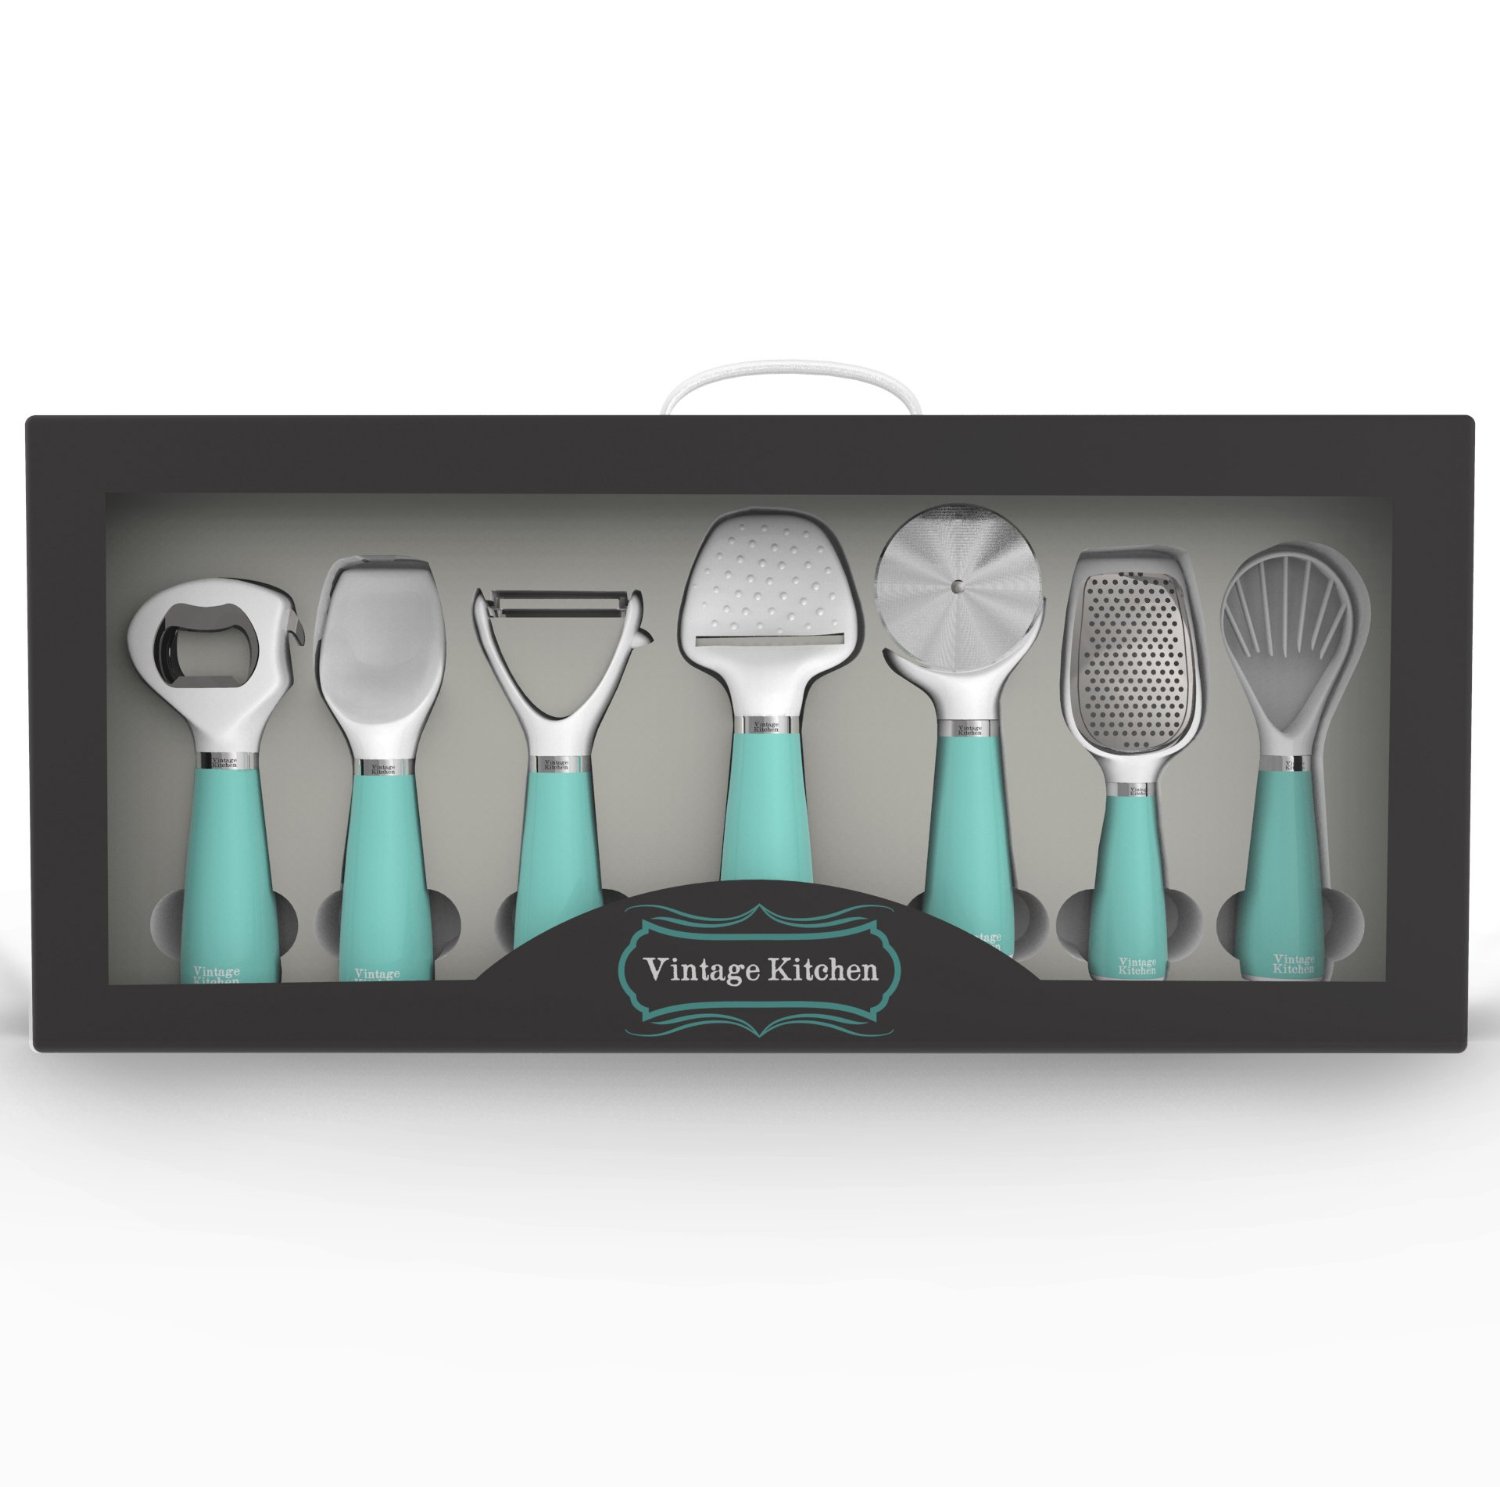 Turquoise Kitchen Gadget Utensil Tool Set